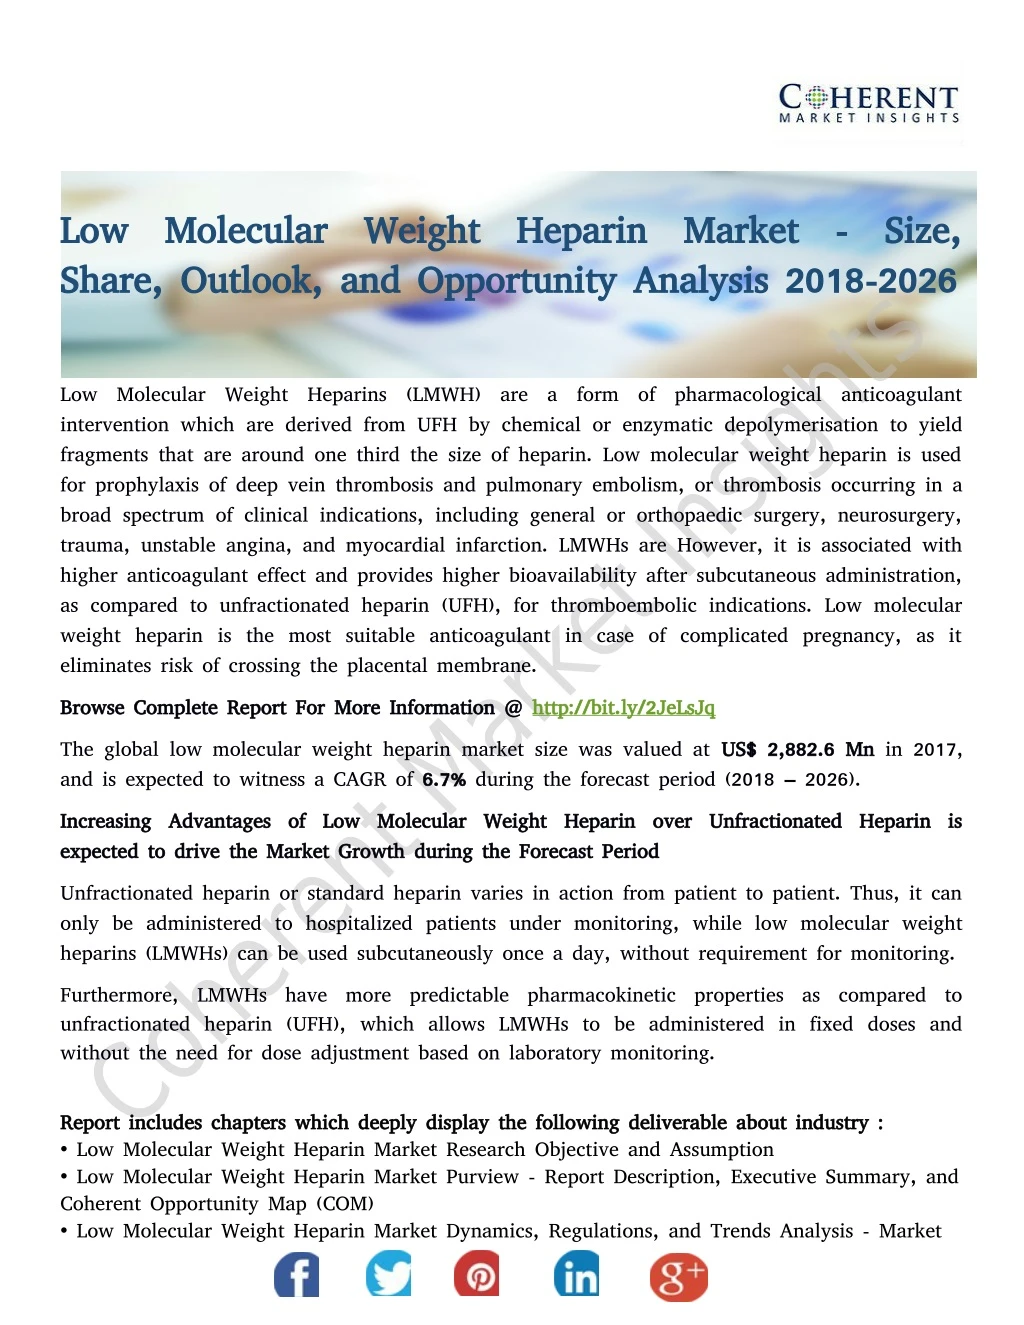 low molecular weight heparin market size